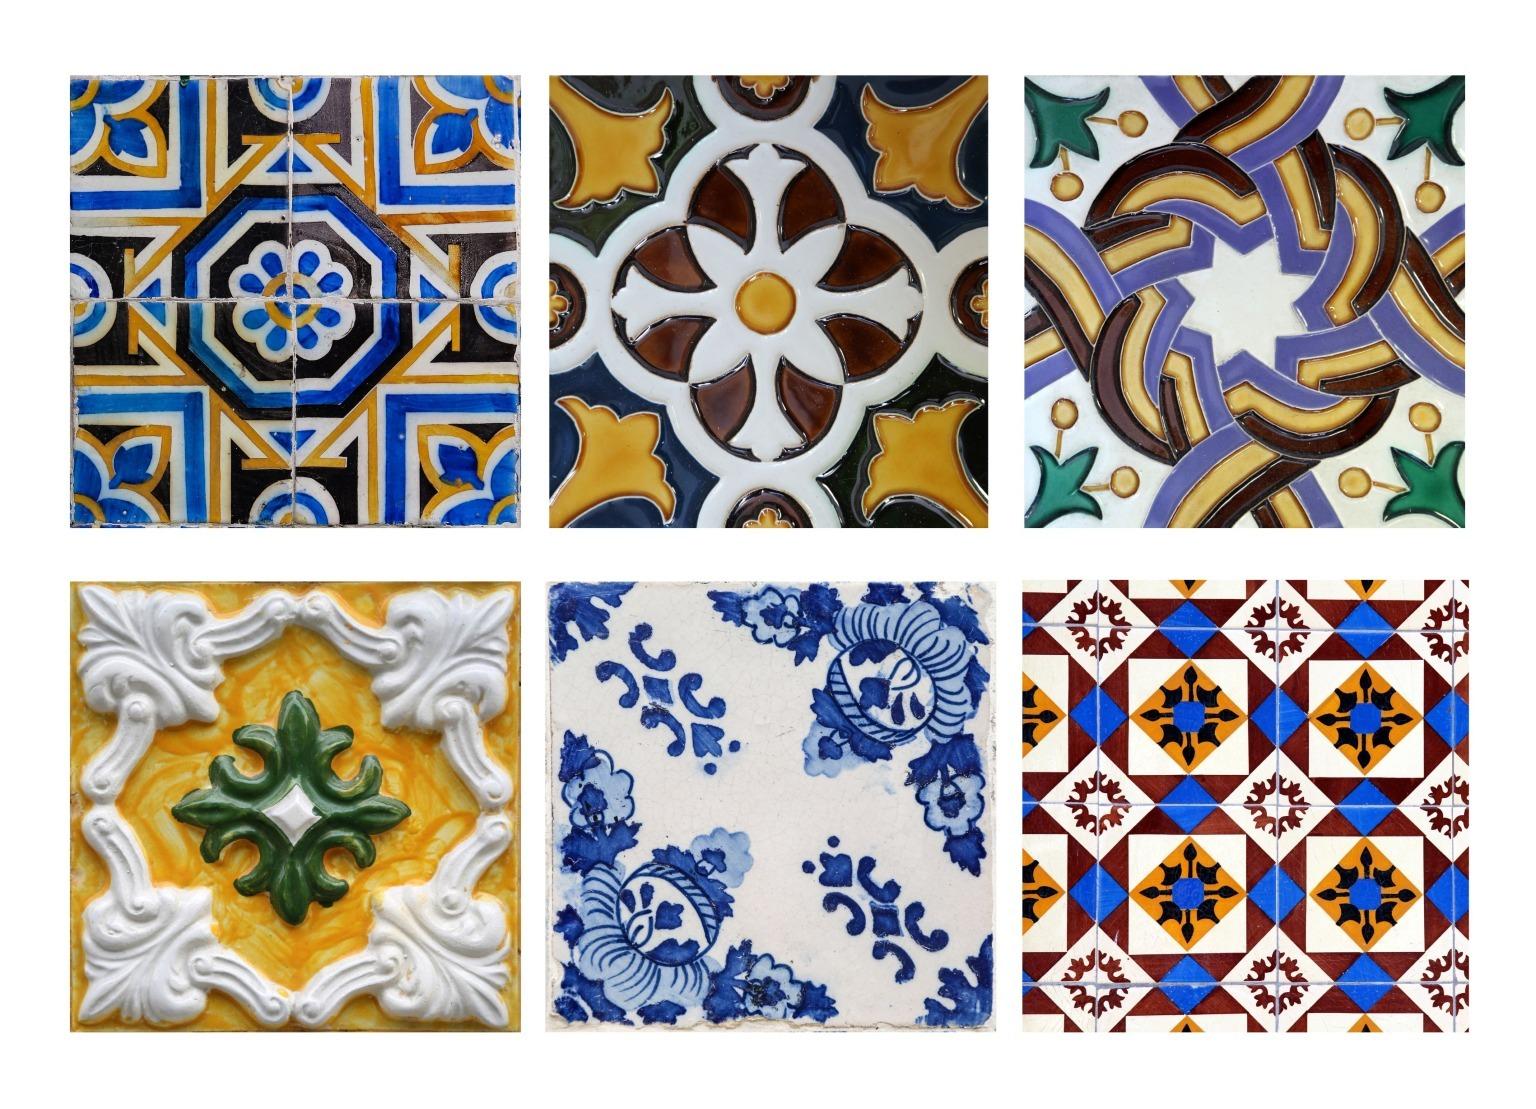 Una colorida gama de azulejos portugueses, con intrincados diseños y patrimonio cultural.